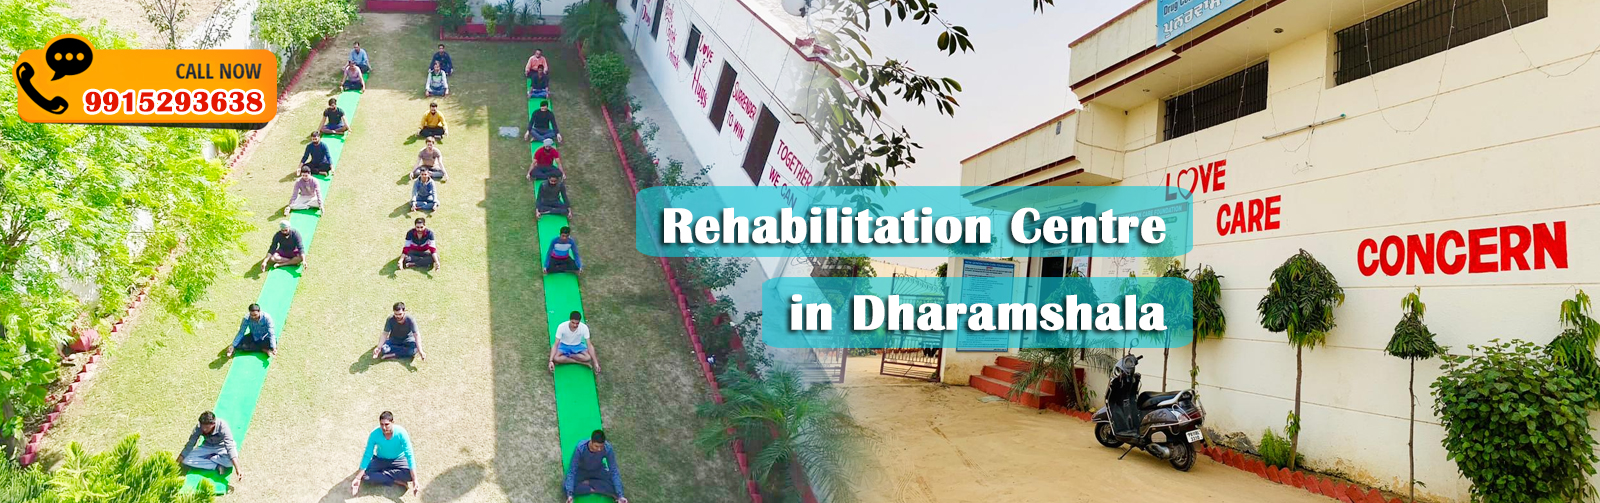 Rehabilitation Centre in Dharamshala